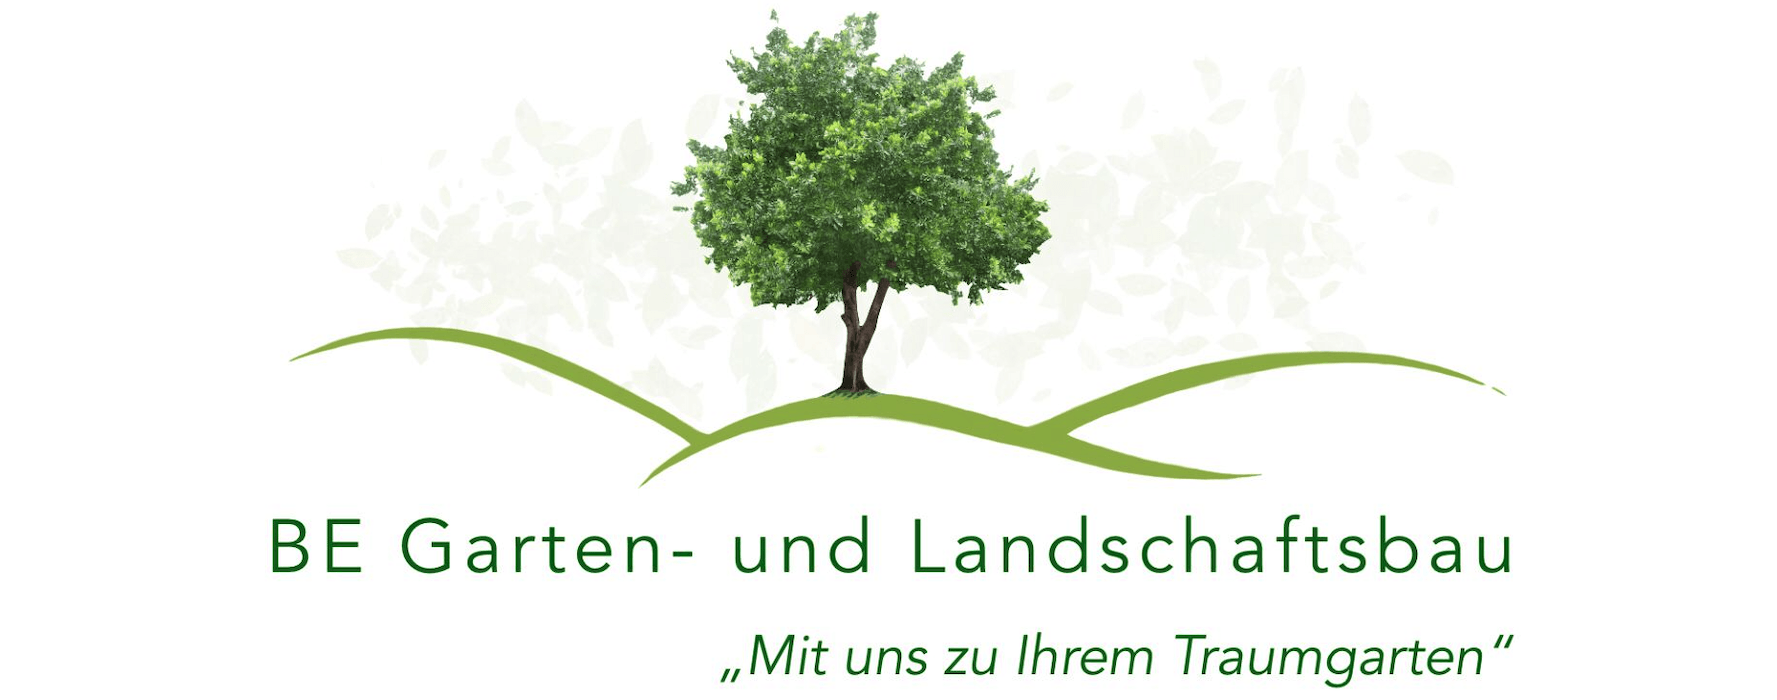 BE Gartenbau Galabau Garten und Landschaftsbau Gartenpflege Logo